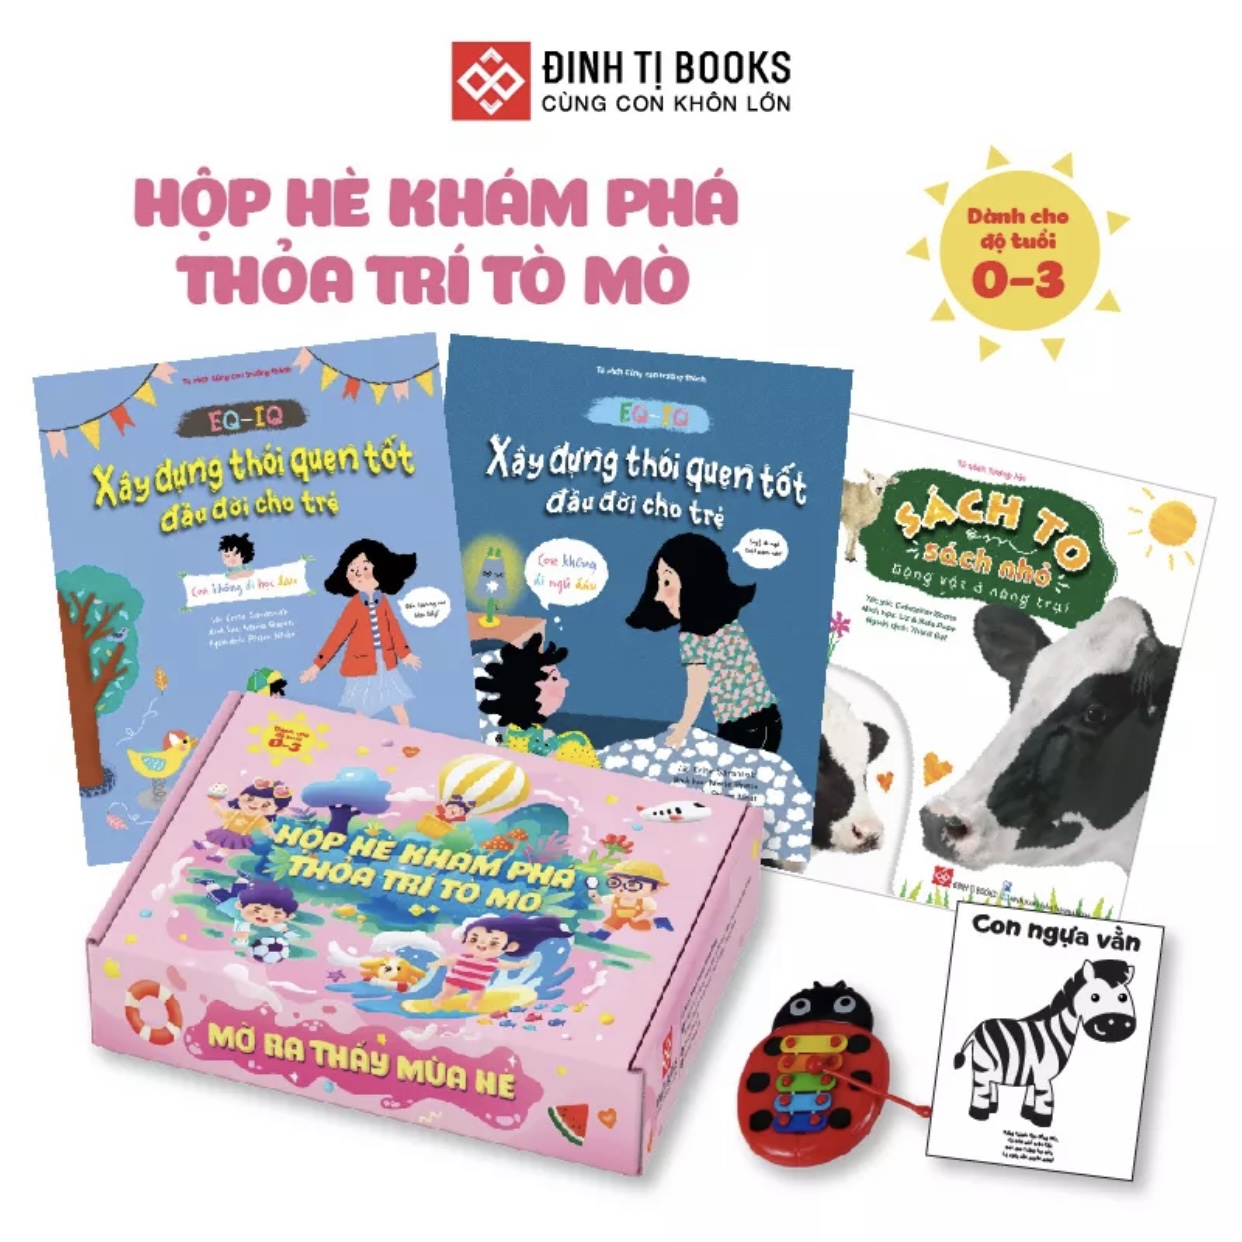 Sách - Hộp Hè Khám Phá, Thỏa Trí Tò Mò – Mở Ra Thấy Mùa Hè cho trẻ 0 - 3 tuổi – Đinh Tị Books